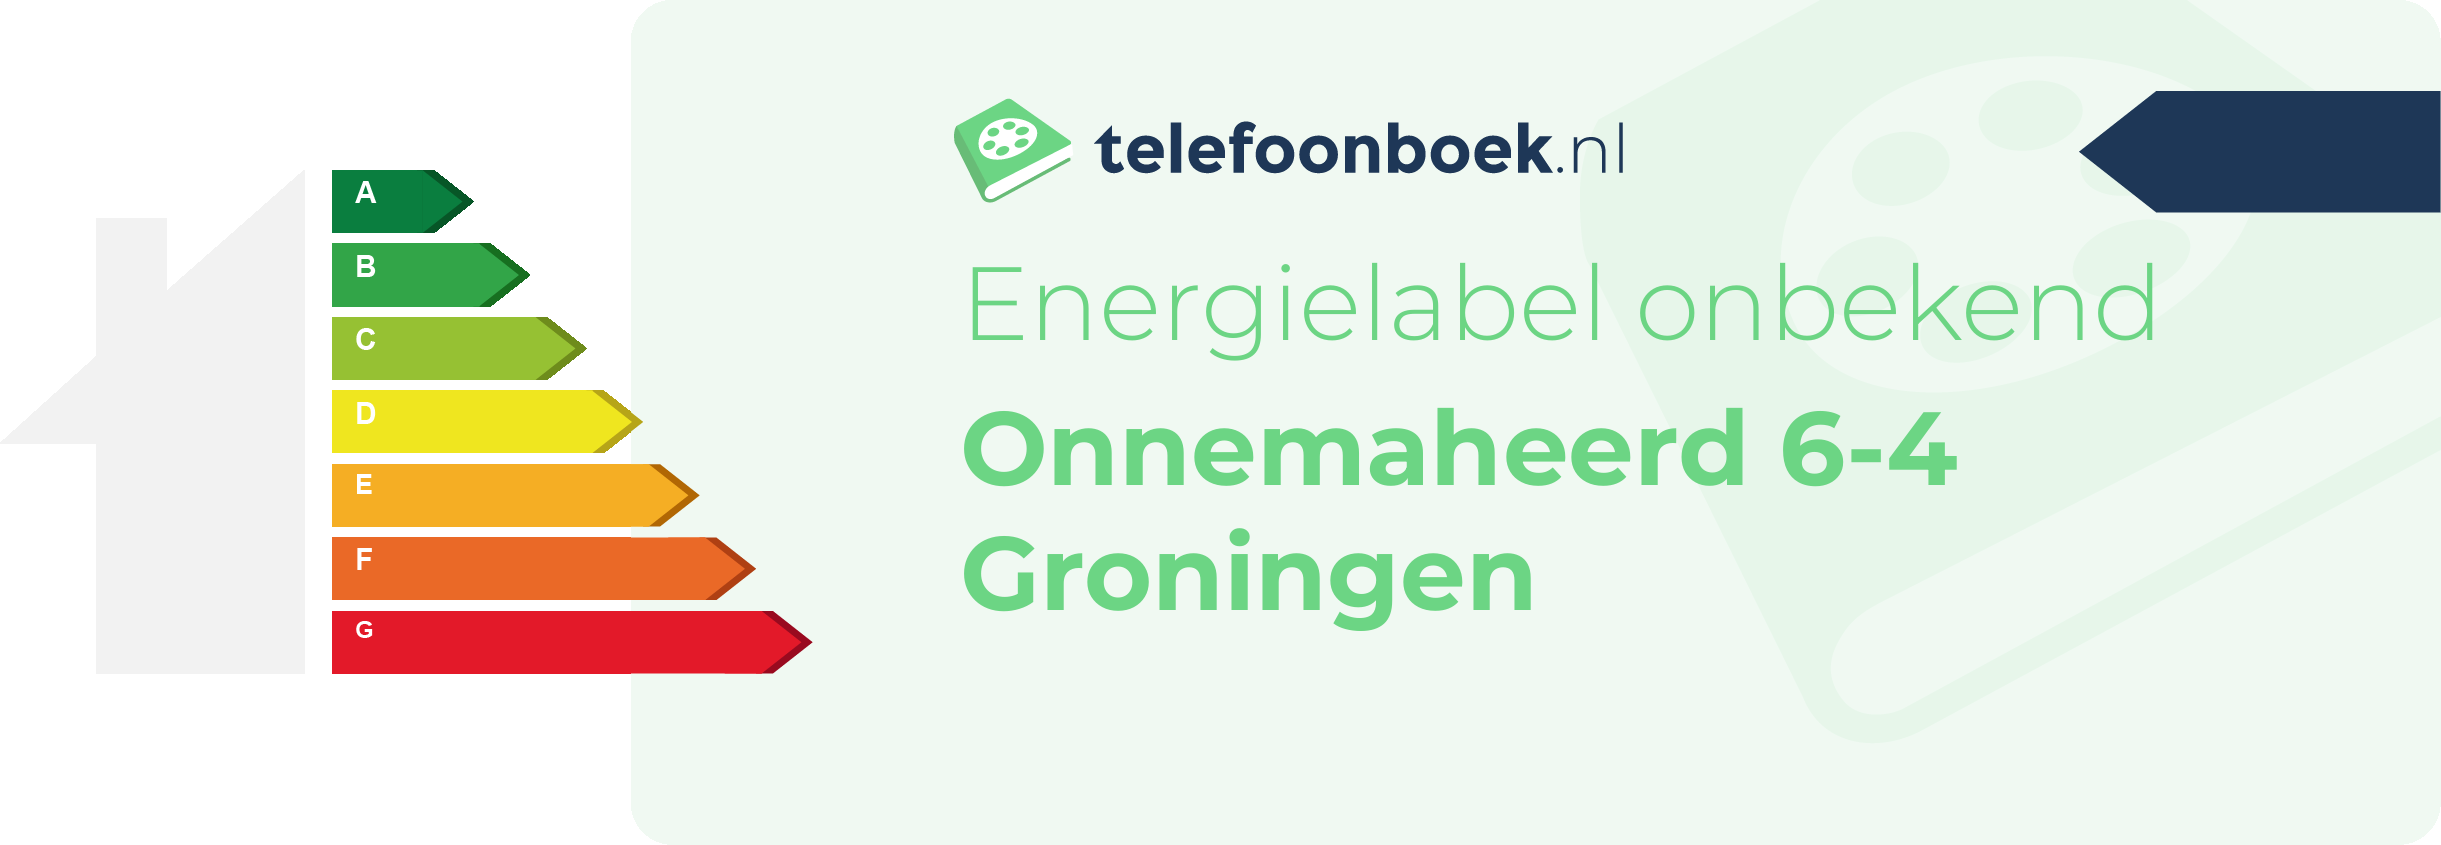 Energielabel Onnemaheerd 6-4 Groningen